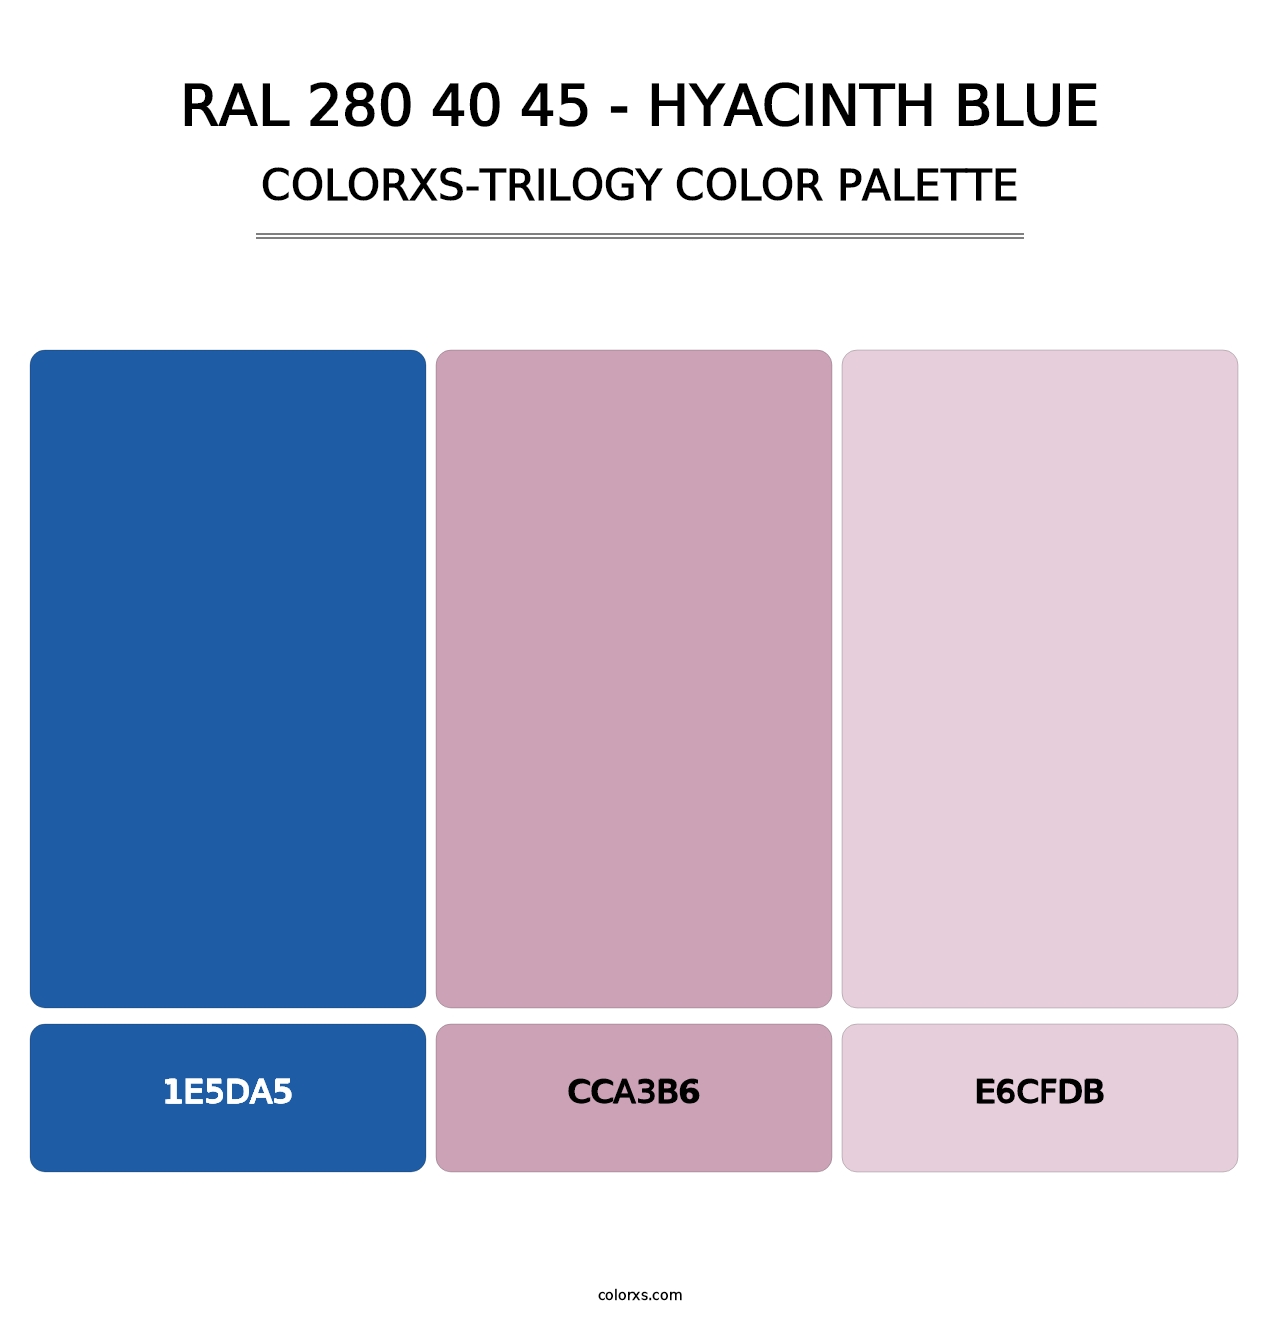 RAL 280 40 45 - Hyacinth Blue - Colorxs Trilogy Palette